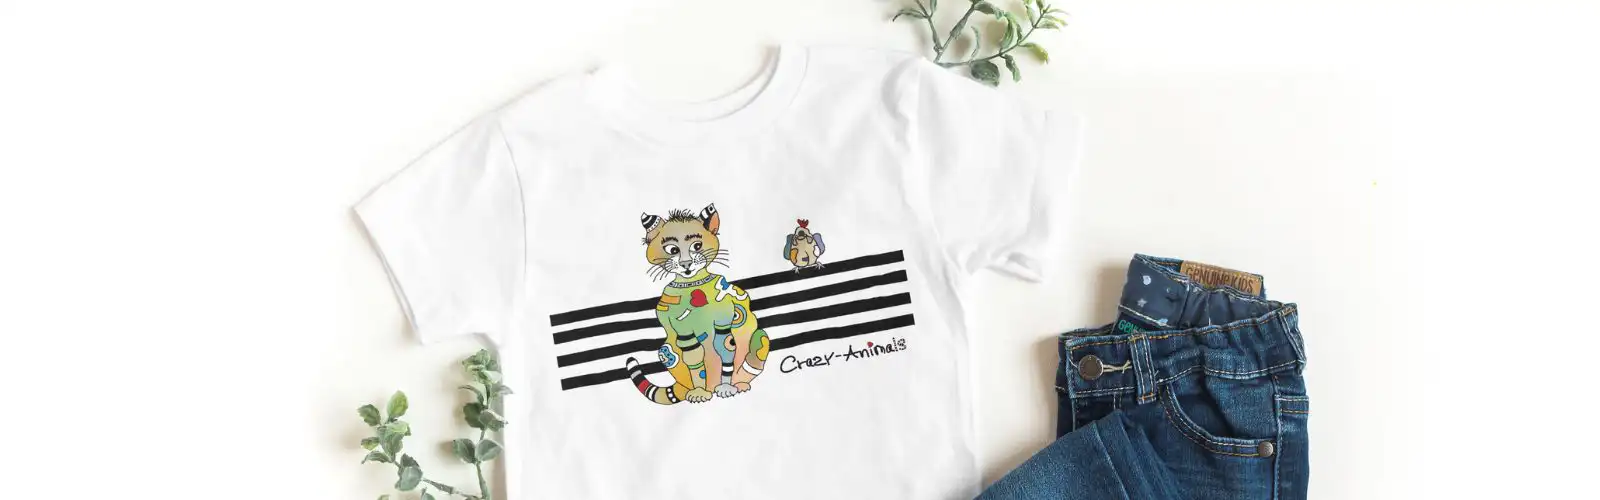 Lustiges T-Shirt aus der Crazy-Animals Kollektion, Katze Lina